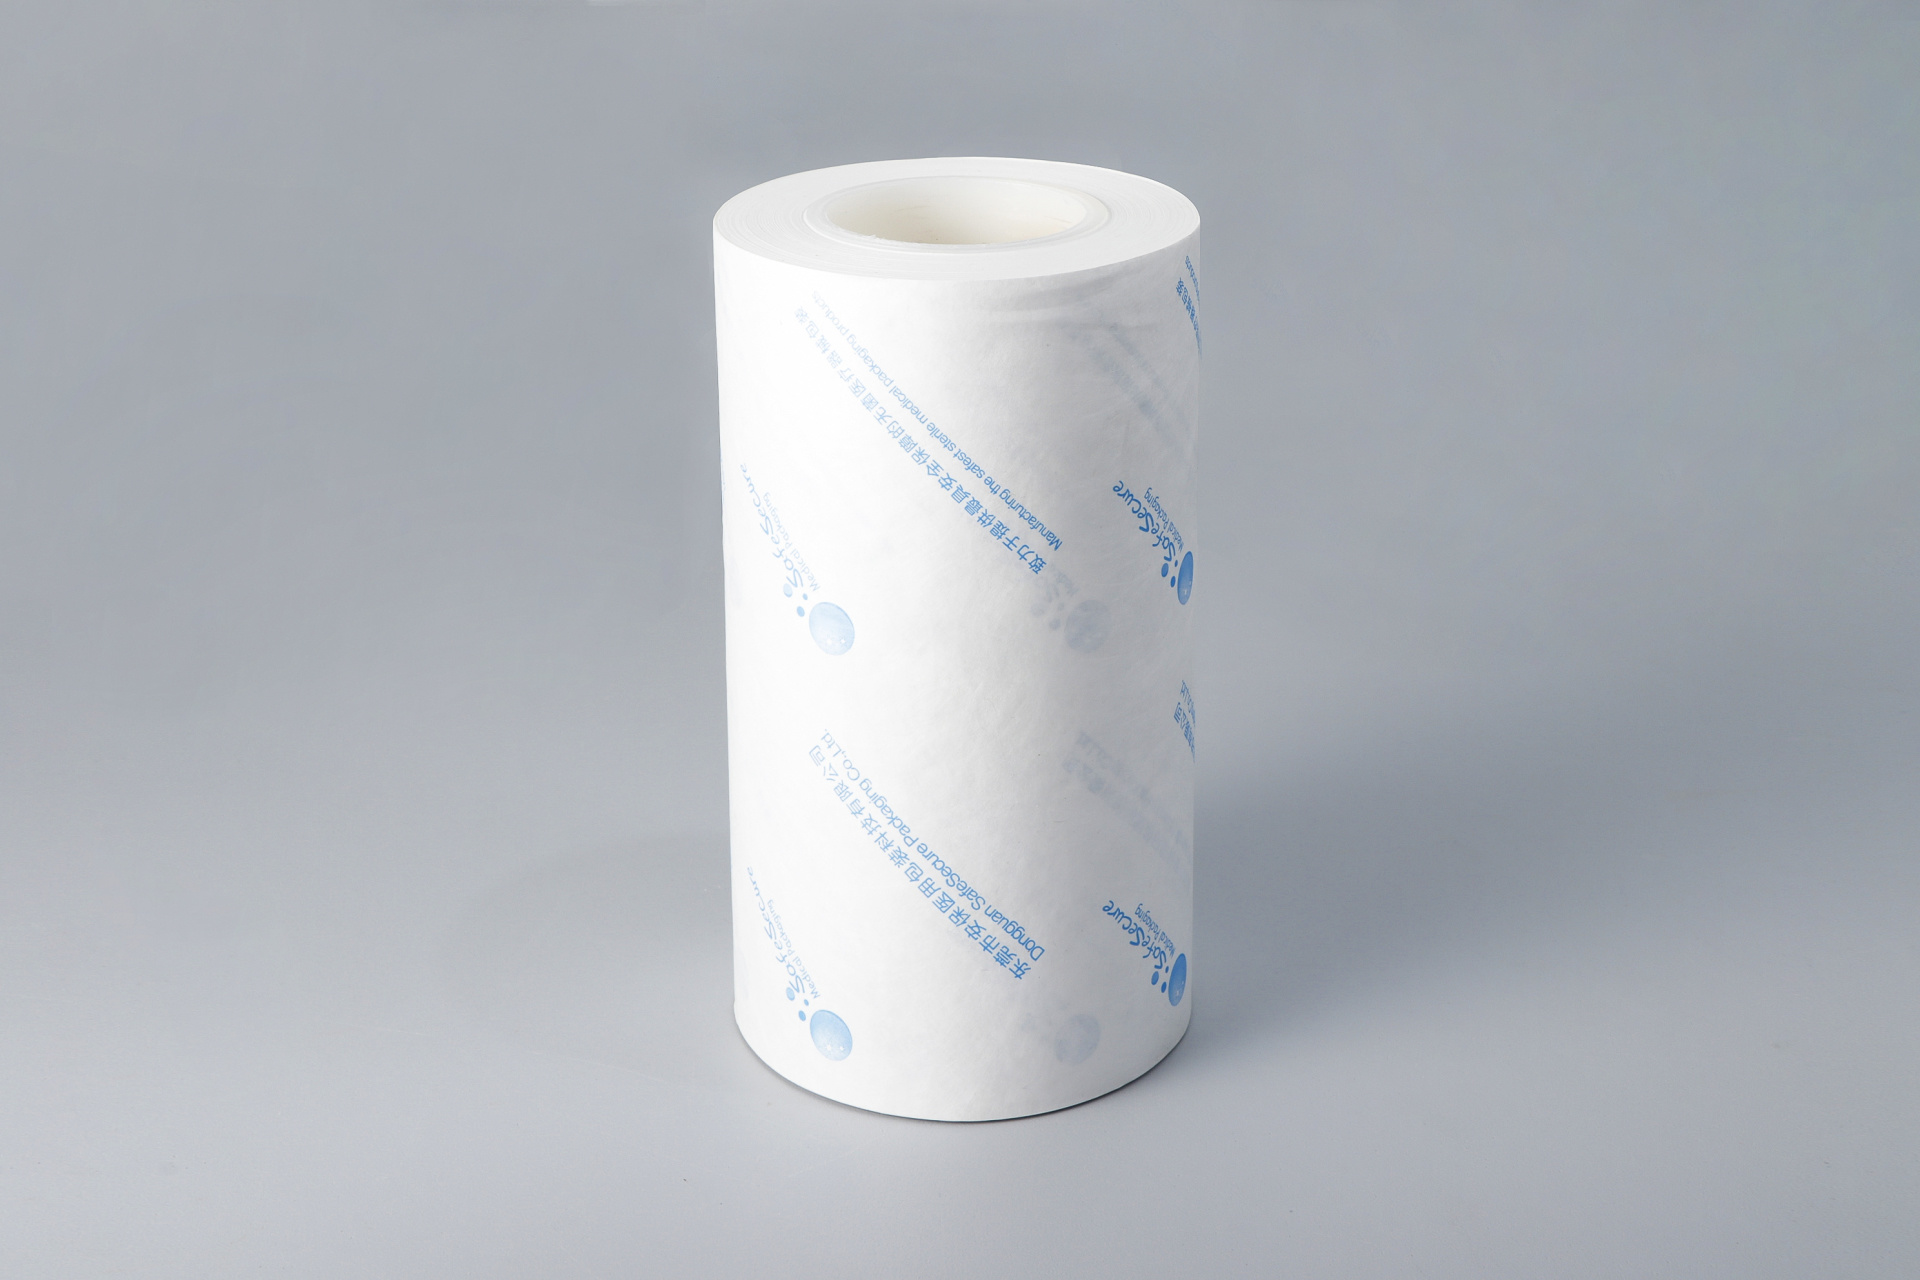 Tyvek 袋-东莞市安保医用包装科技有限公司- 灭菌包装袋|皱纹纸|无纺布